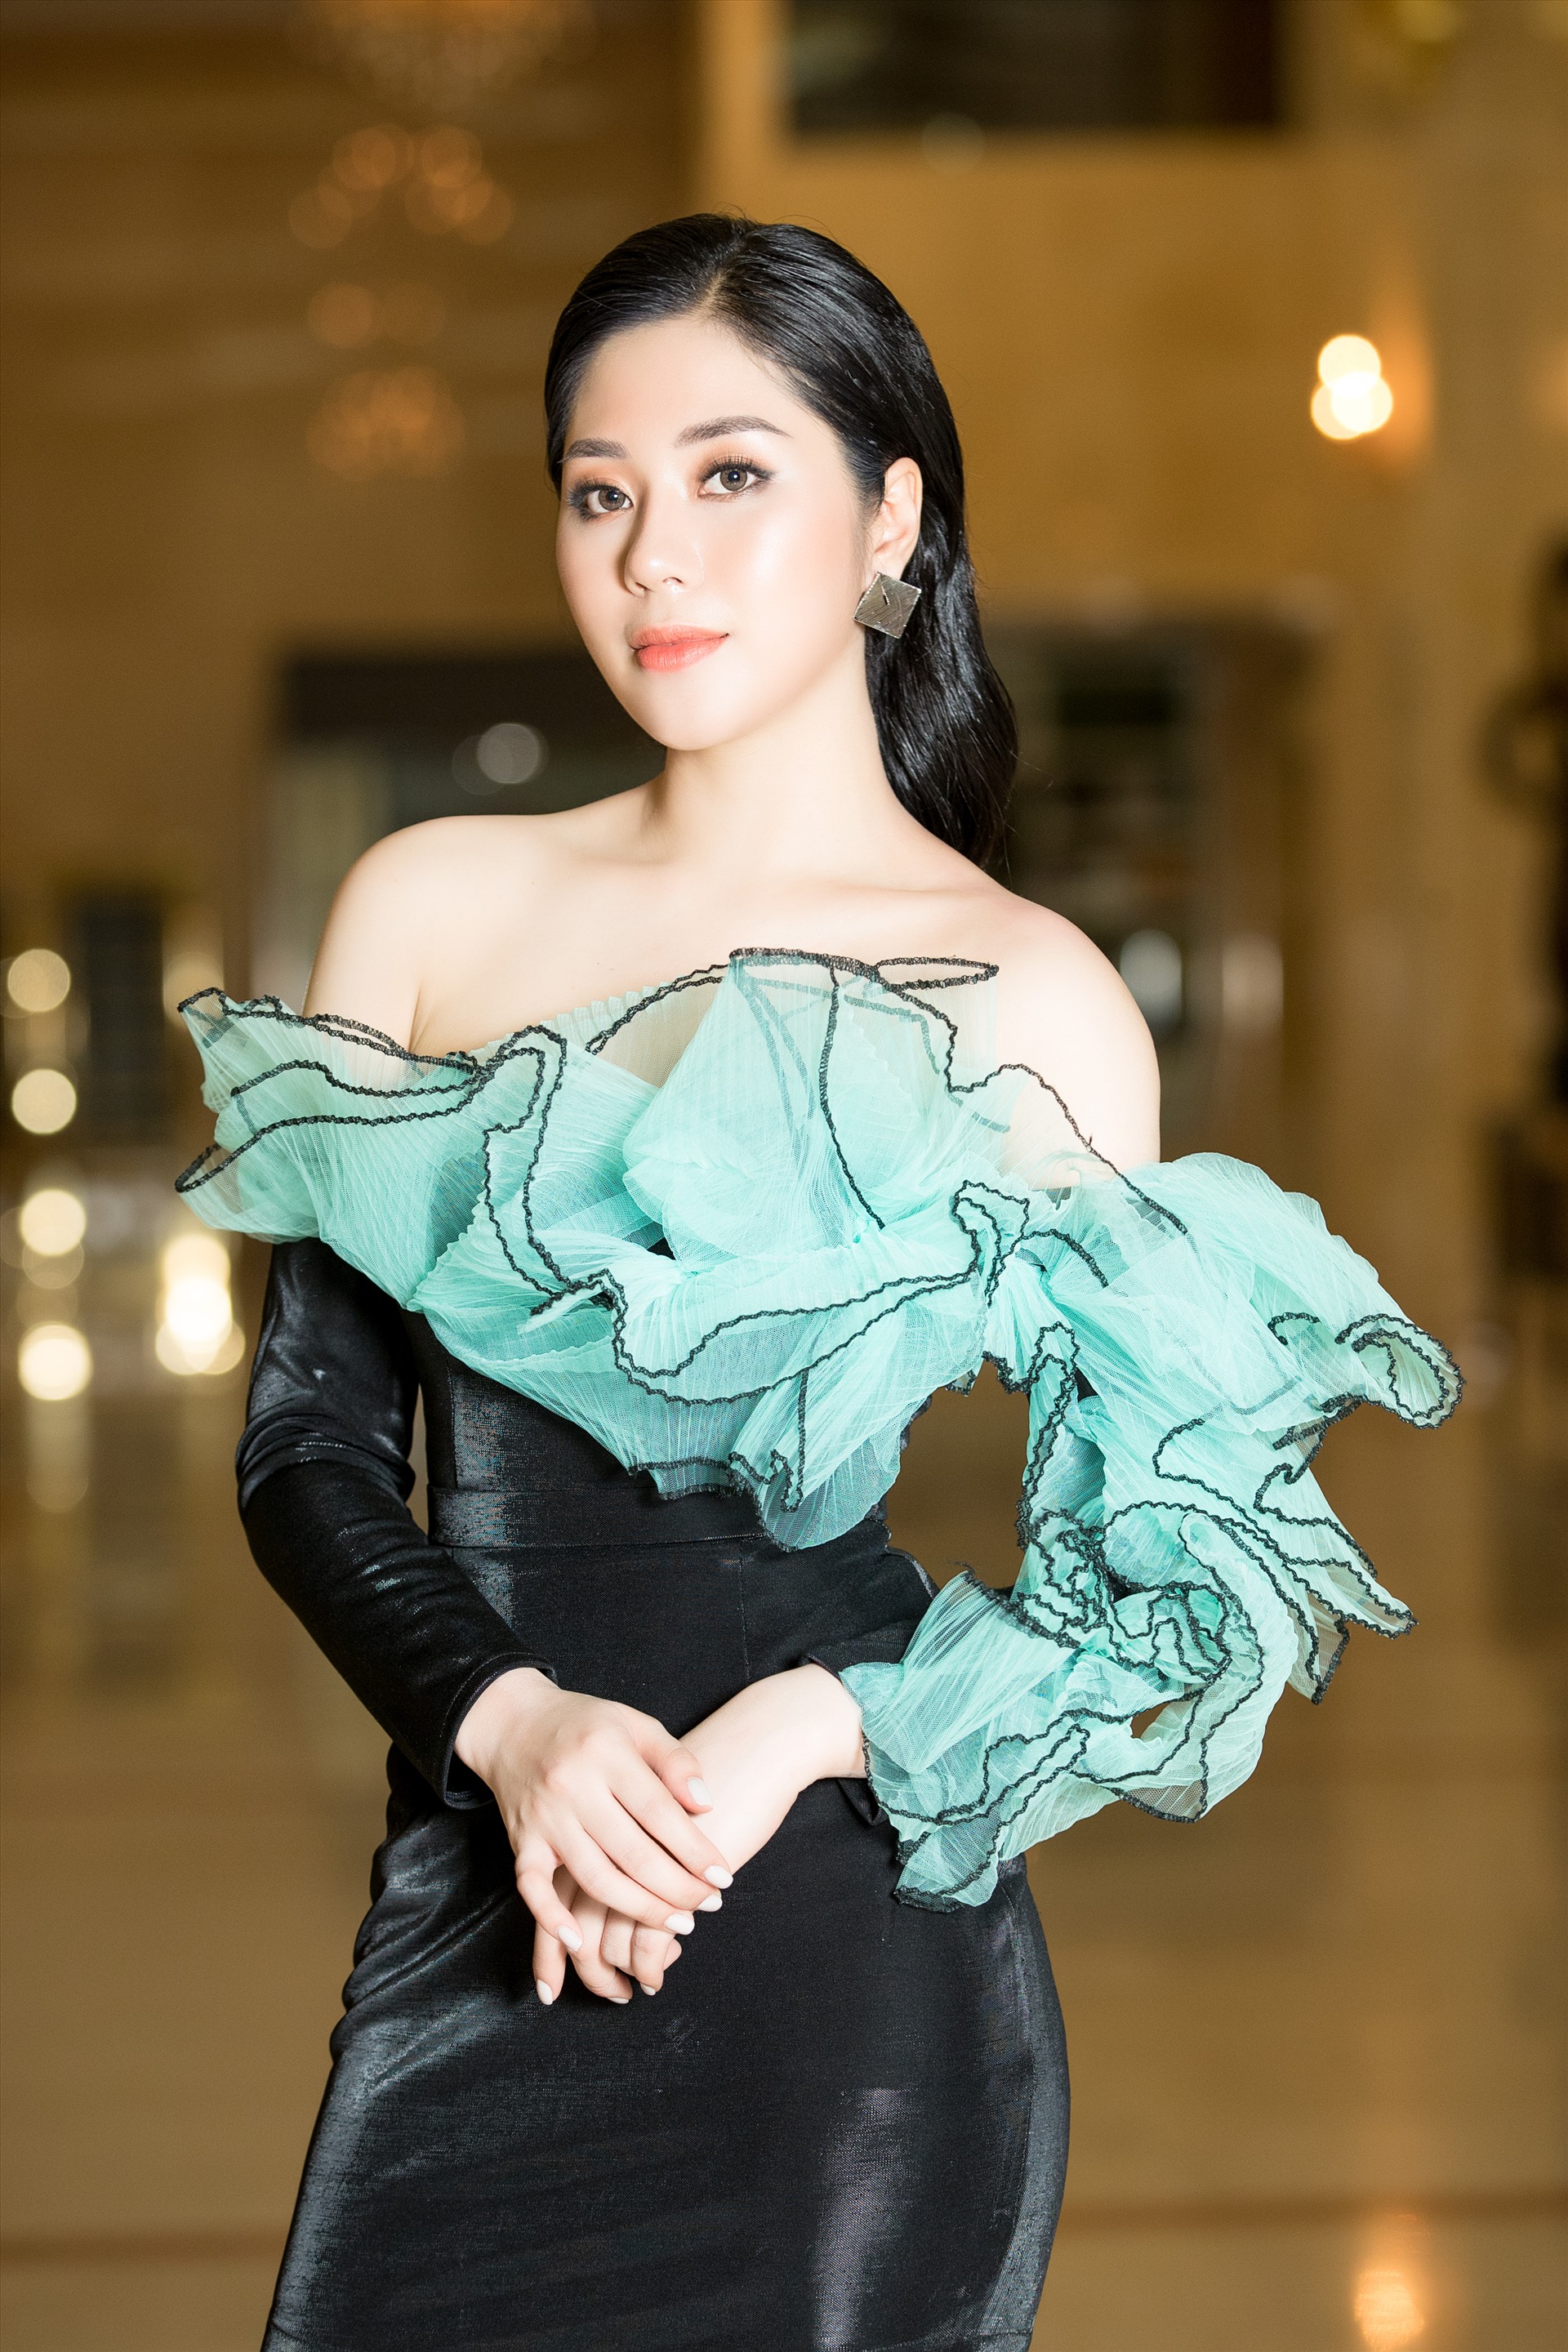 Sau hơn 1 năm đoạt giải Hoa hậu tài năng của cuộc thi Ms Vietnam Beauty International Pageant 2018 tại Thái Lan, người đẹp sinh năm 1996 cho thấy sự trưởng thành, chỉn chu về mặt hình ảnh khi không chỉ đầu tư trang phục bắt mắt mà về diện mạo và lối trang điểm cũng vô cùng ấn tượng.